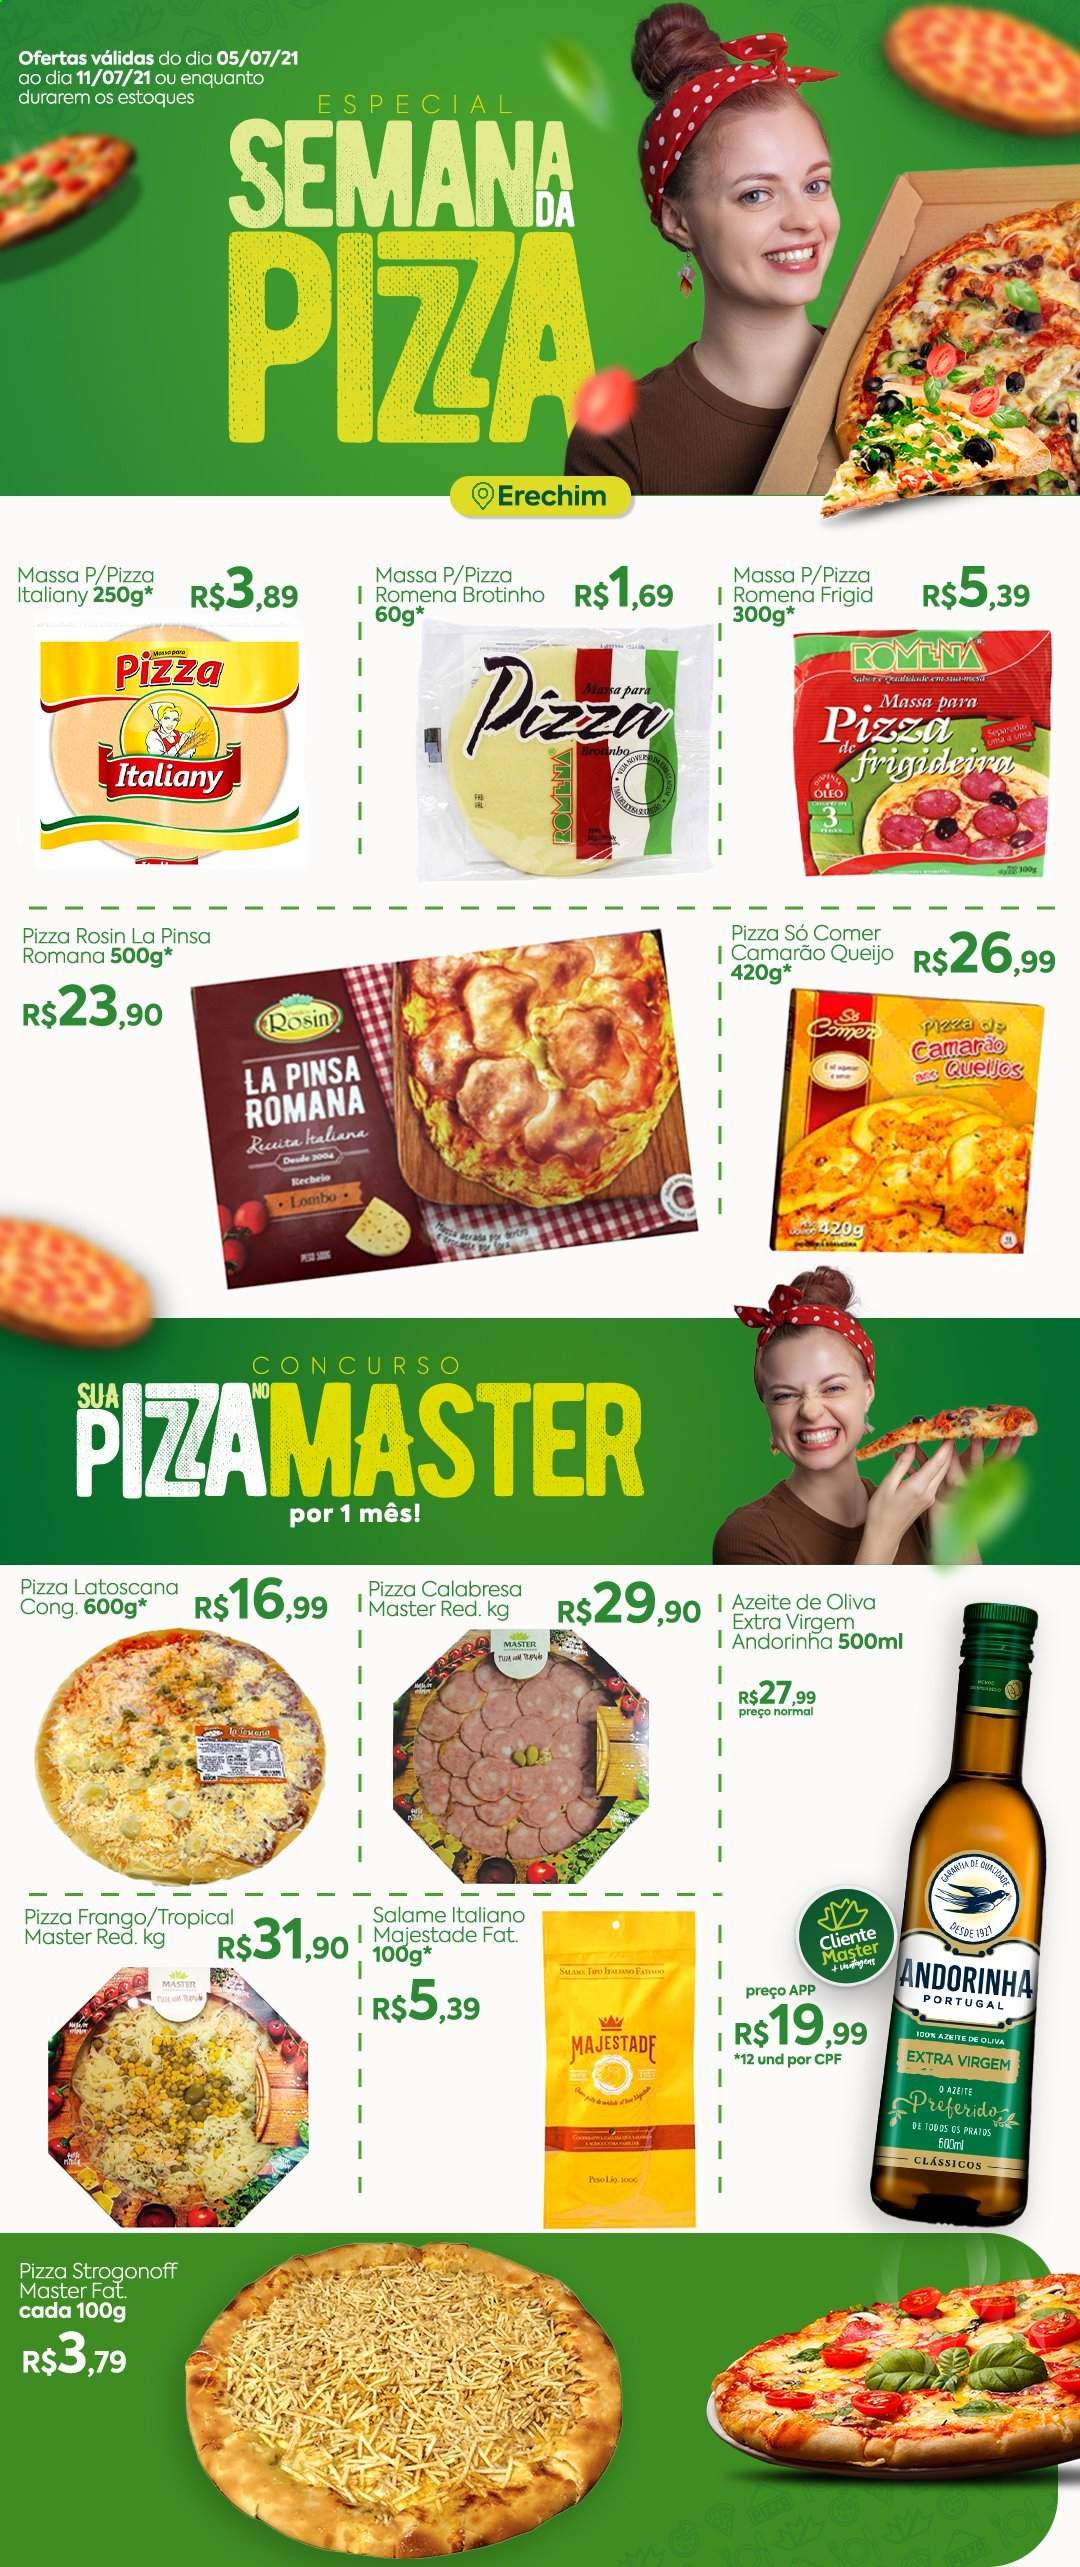 thumbnail - Folheto Master Supermercados - 05/07/2021 - 11/07/2021 - Produtos em promoção - lombo, strogonoff, salame, queijo, massa para pizza, azeite de oliva, patatas, prato. Página 1.